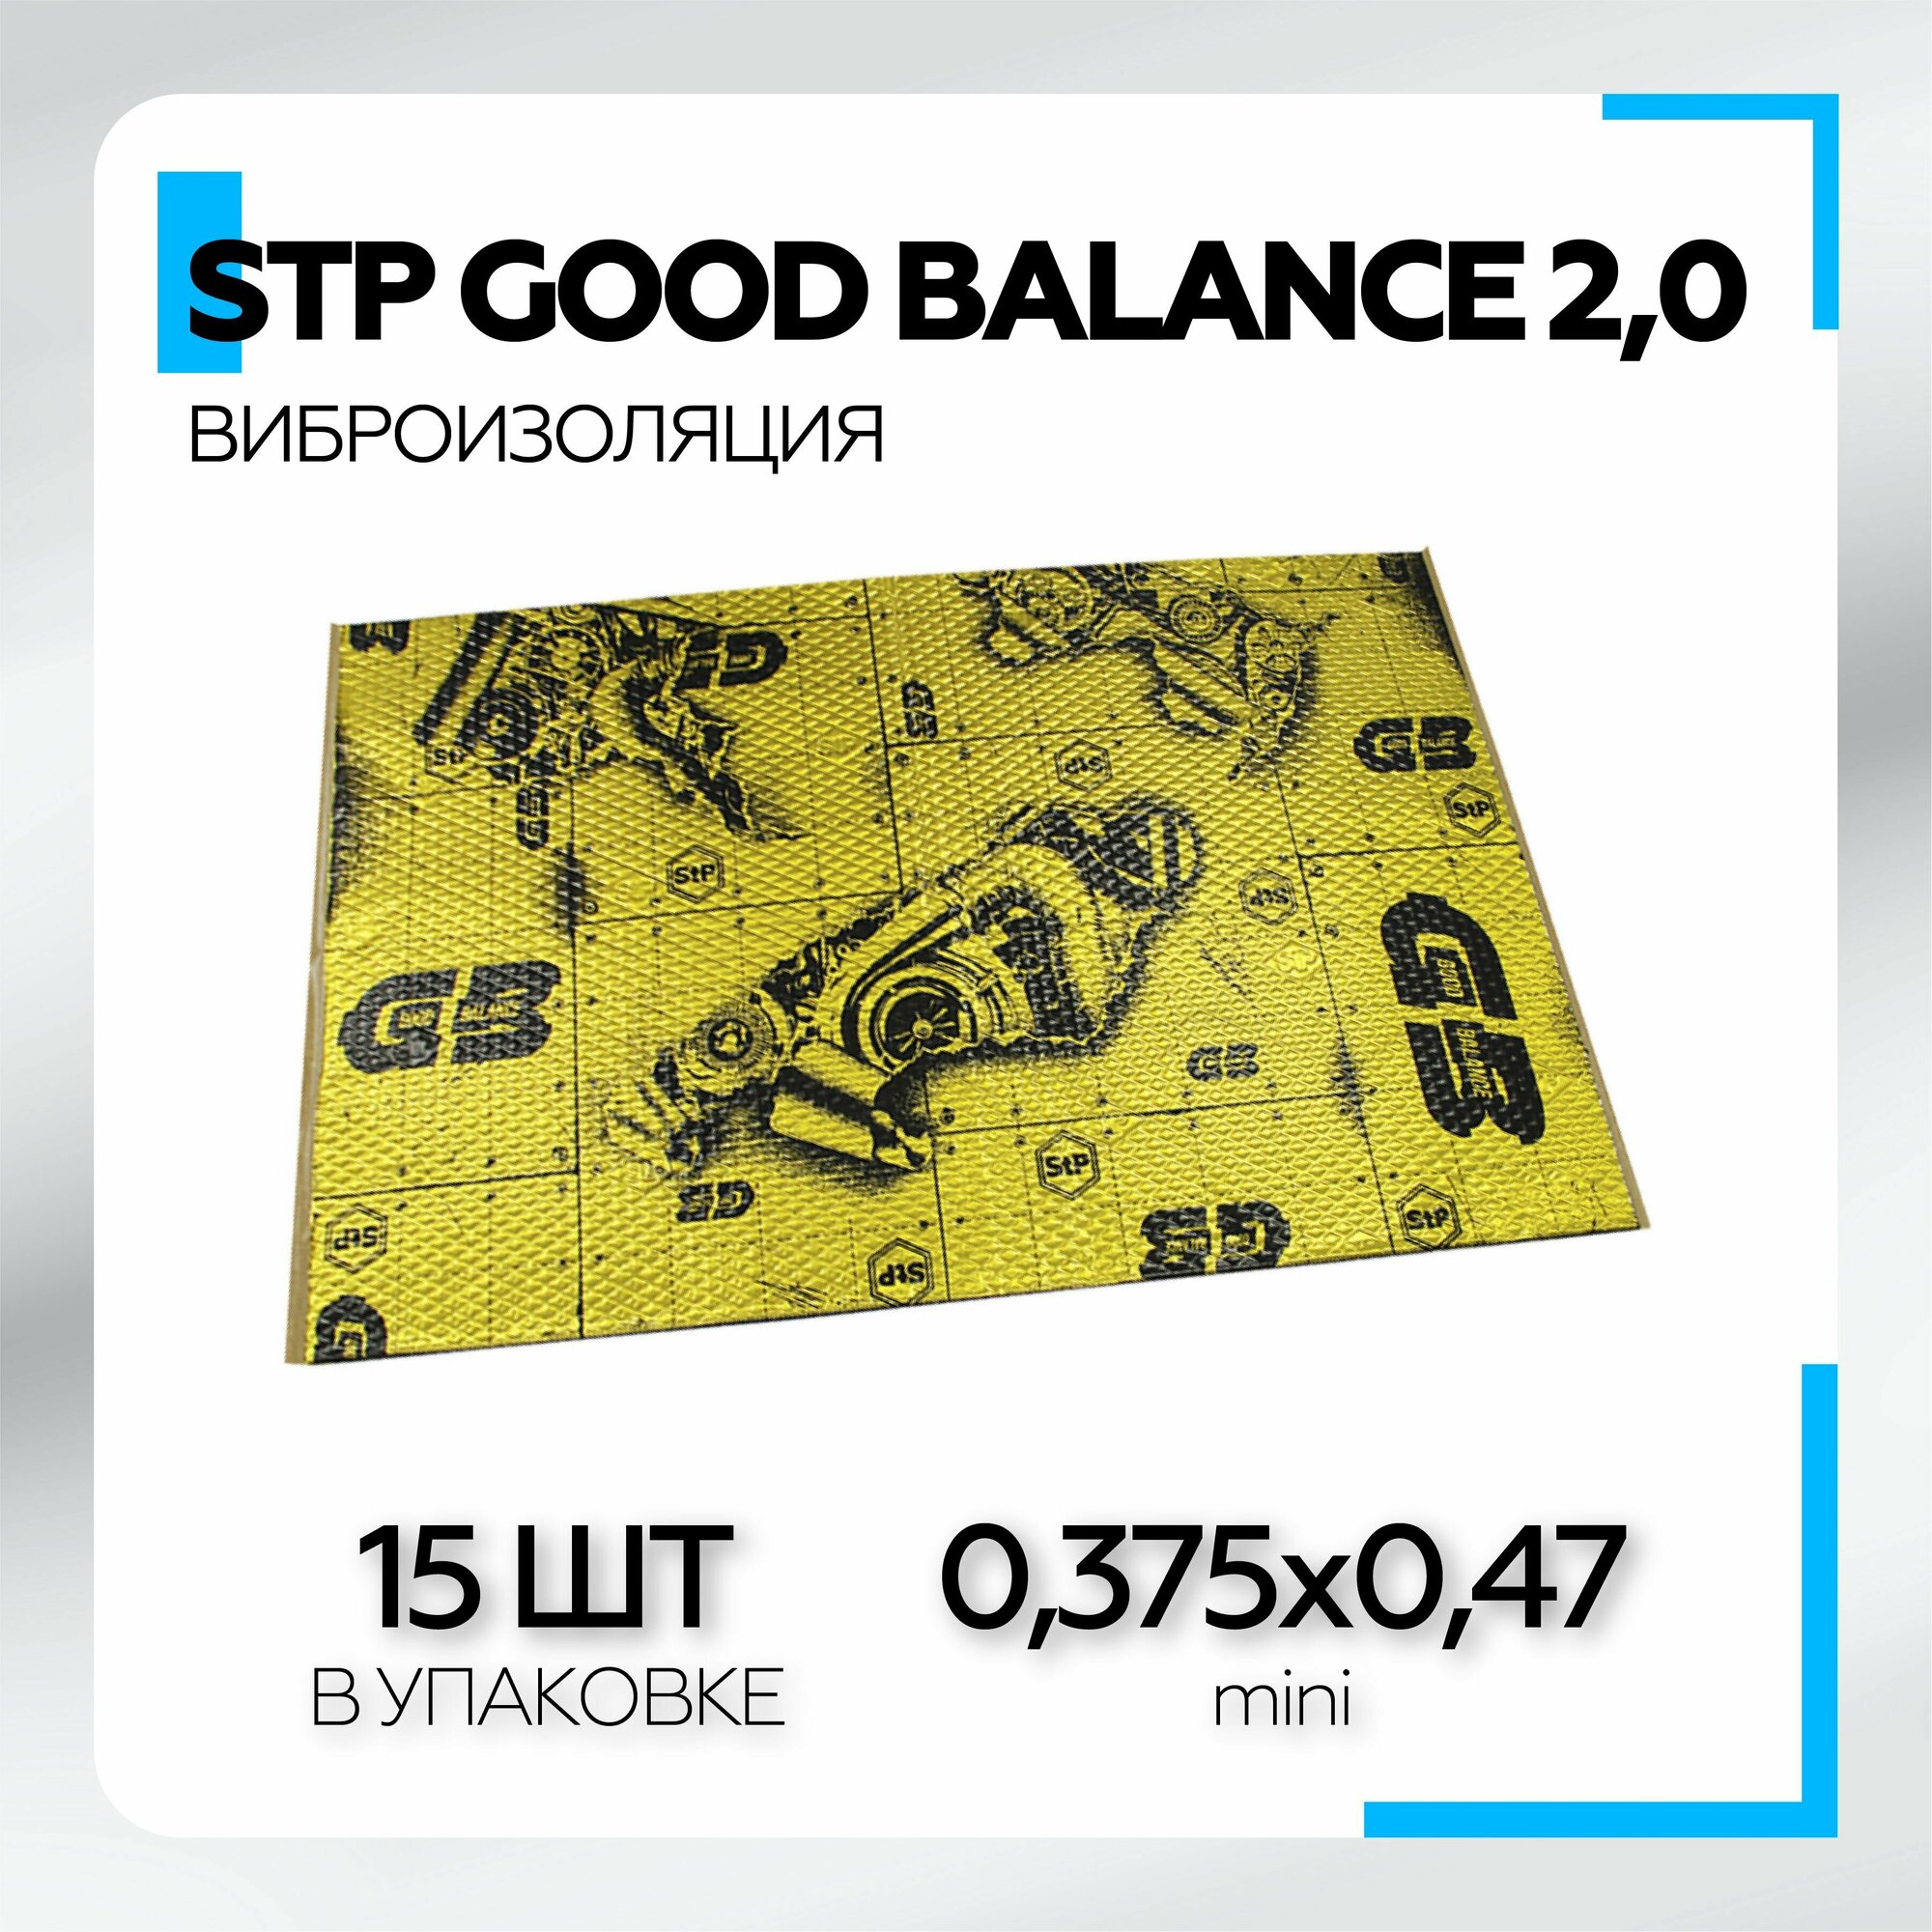 Виброизоляция StP Good Balance 2,0 (0,375х0,47, mini) 15шт/уп Вибродемпфирующий материал Шумоизоляция